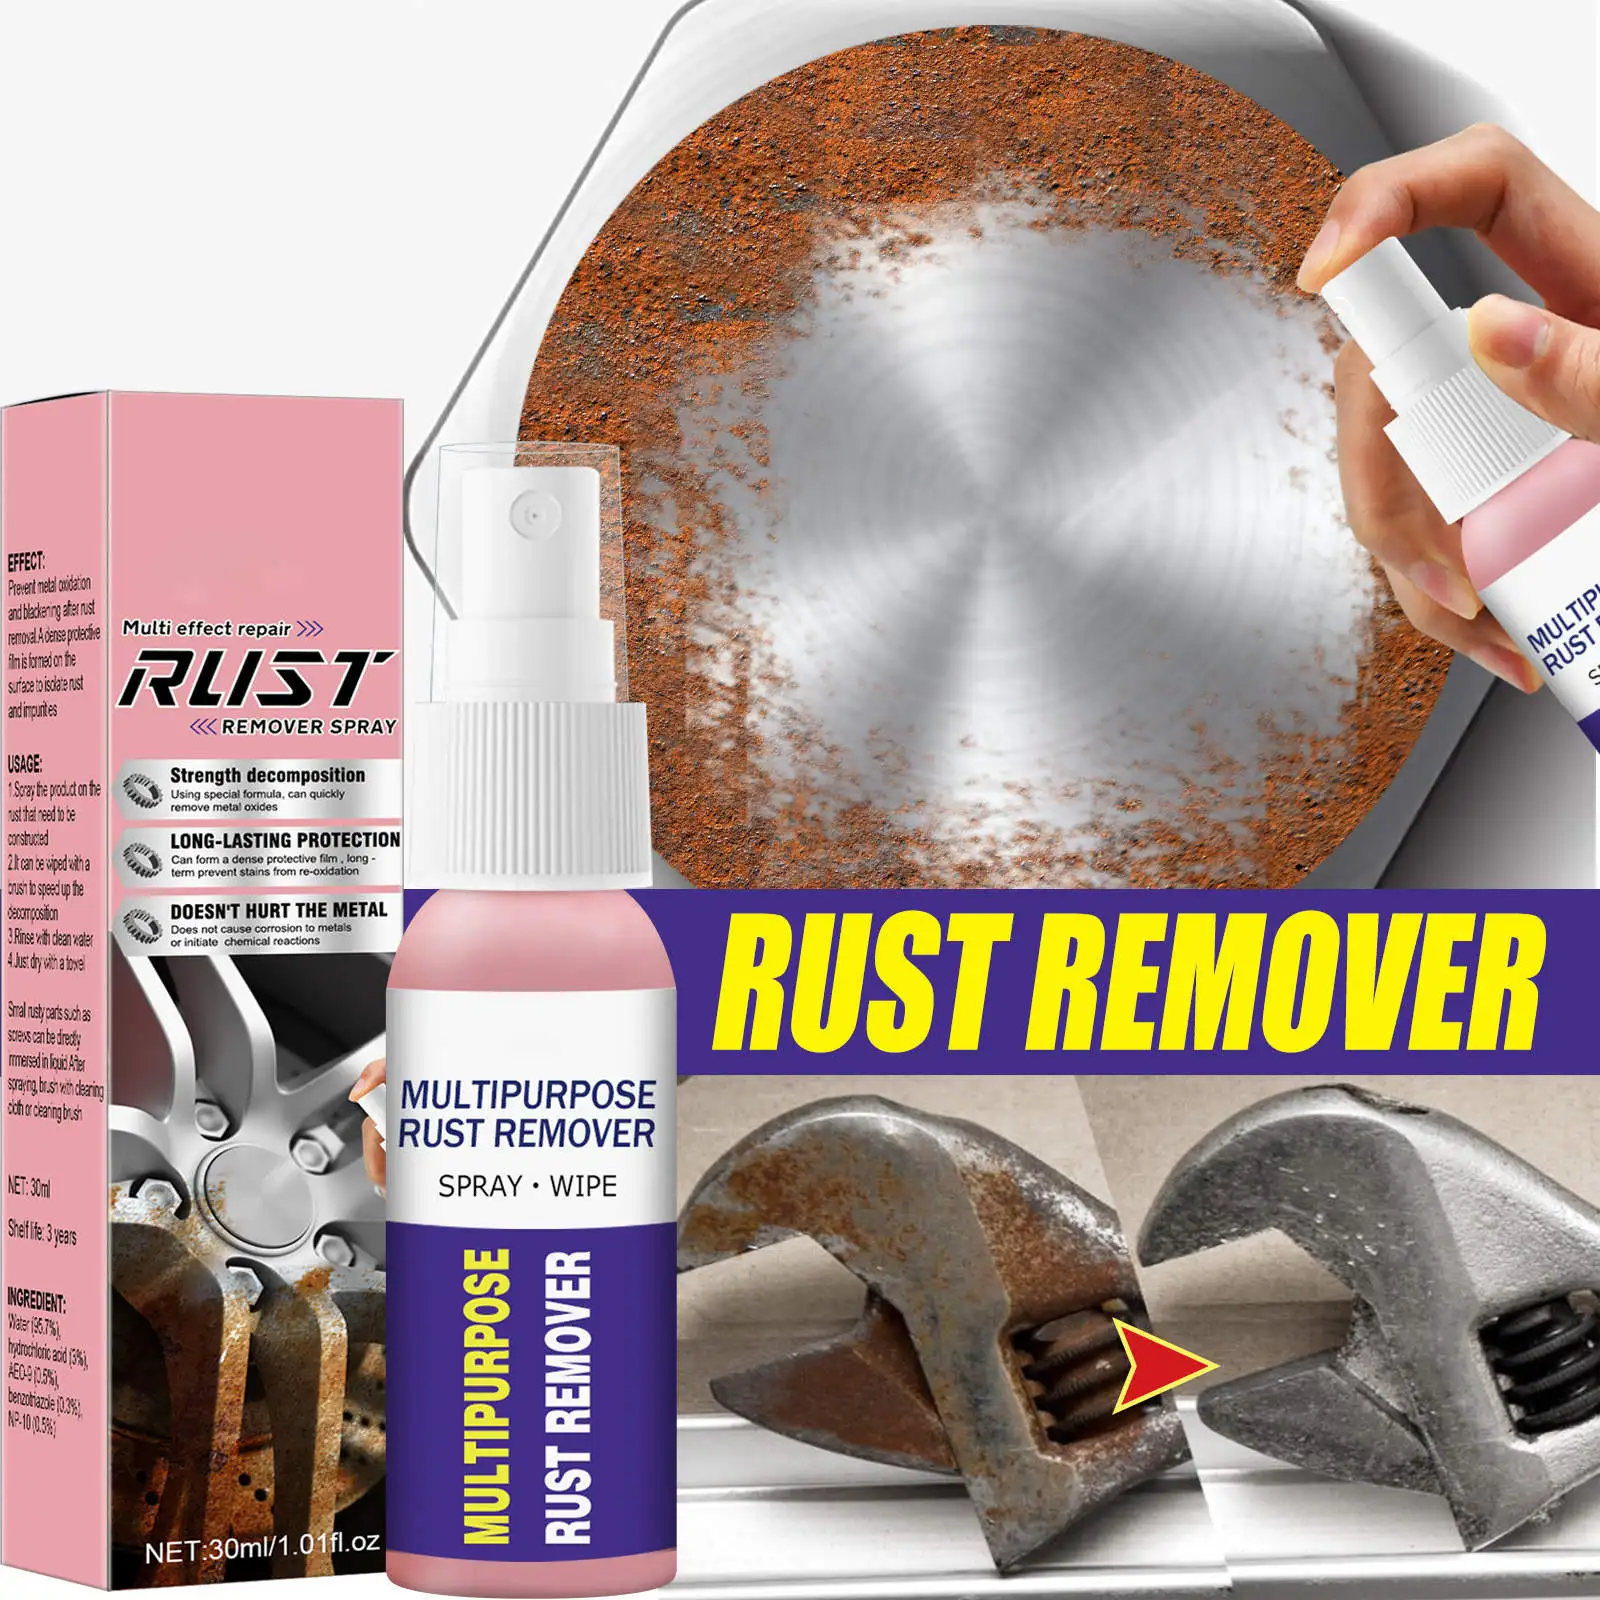 Rust cleaner spray как пользоваться фото 50